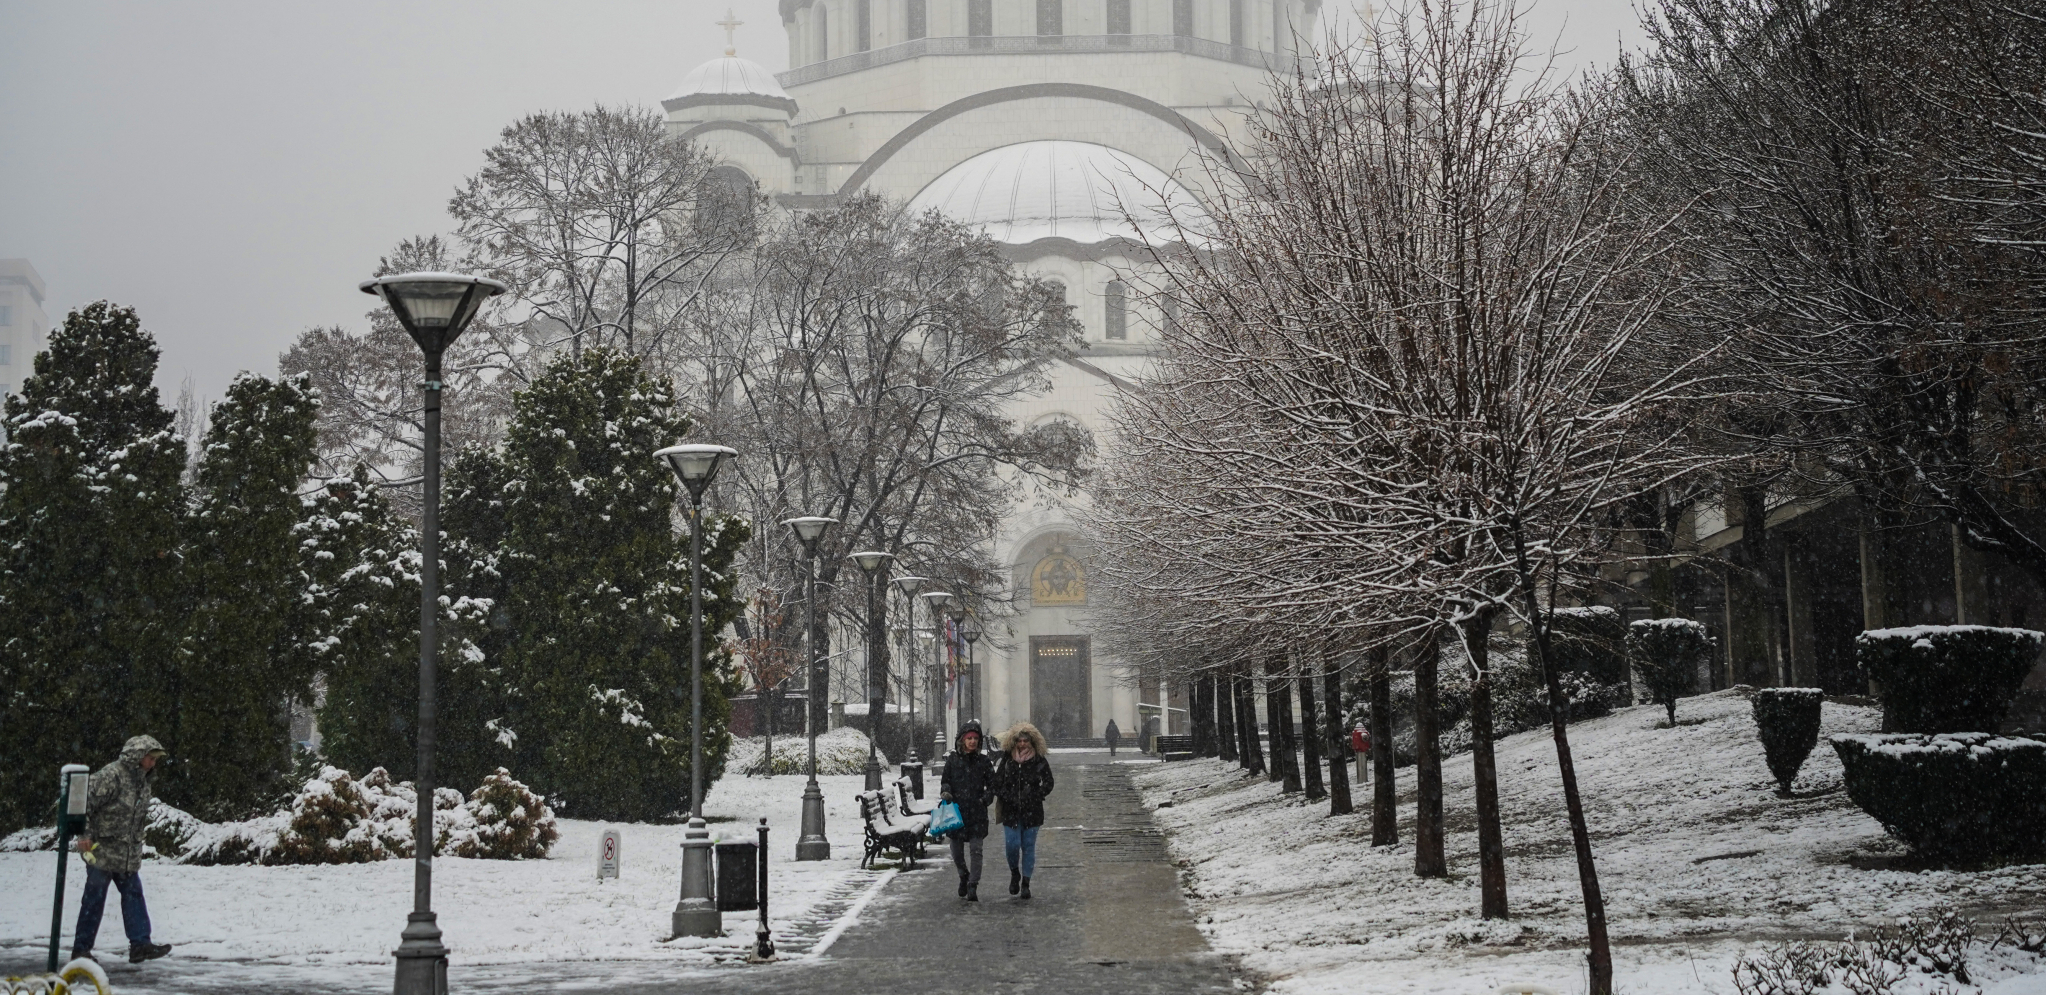 DA LI NAS ČEKA SUROVA ZIMA? Meteorolog objasnio zašto će na periferiji Beograda pre pasti sneg nego u centru